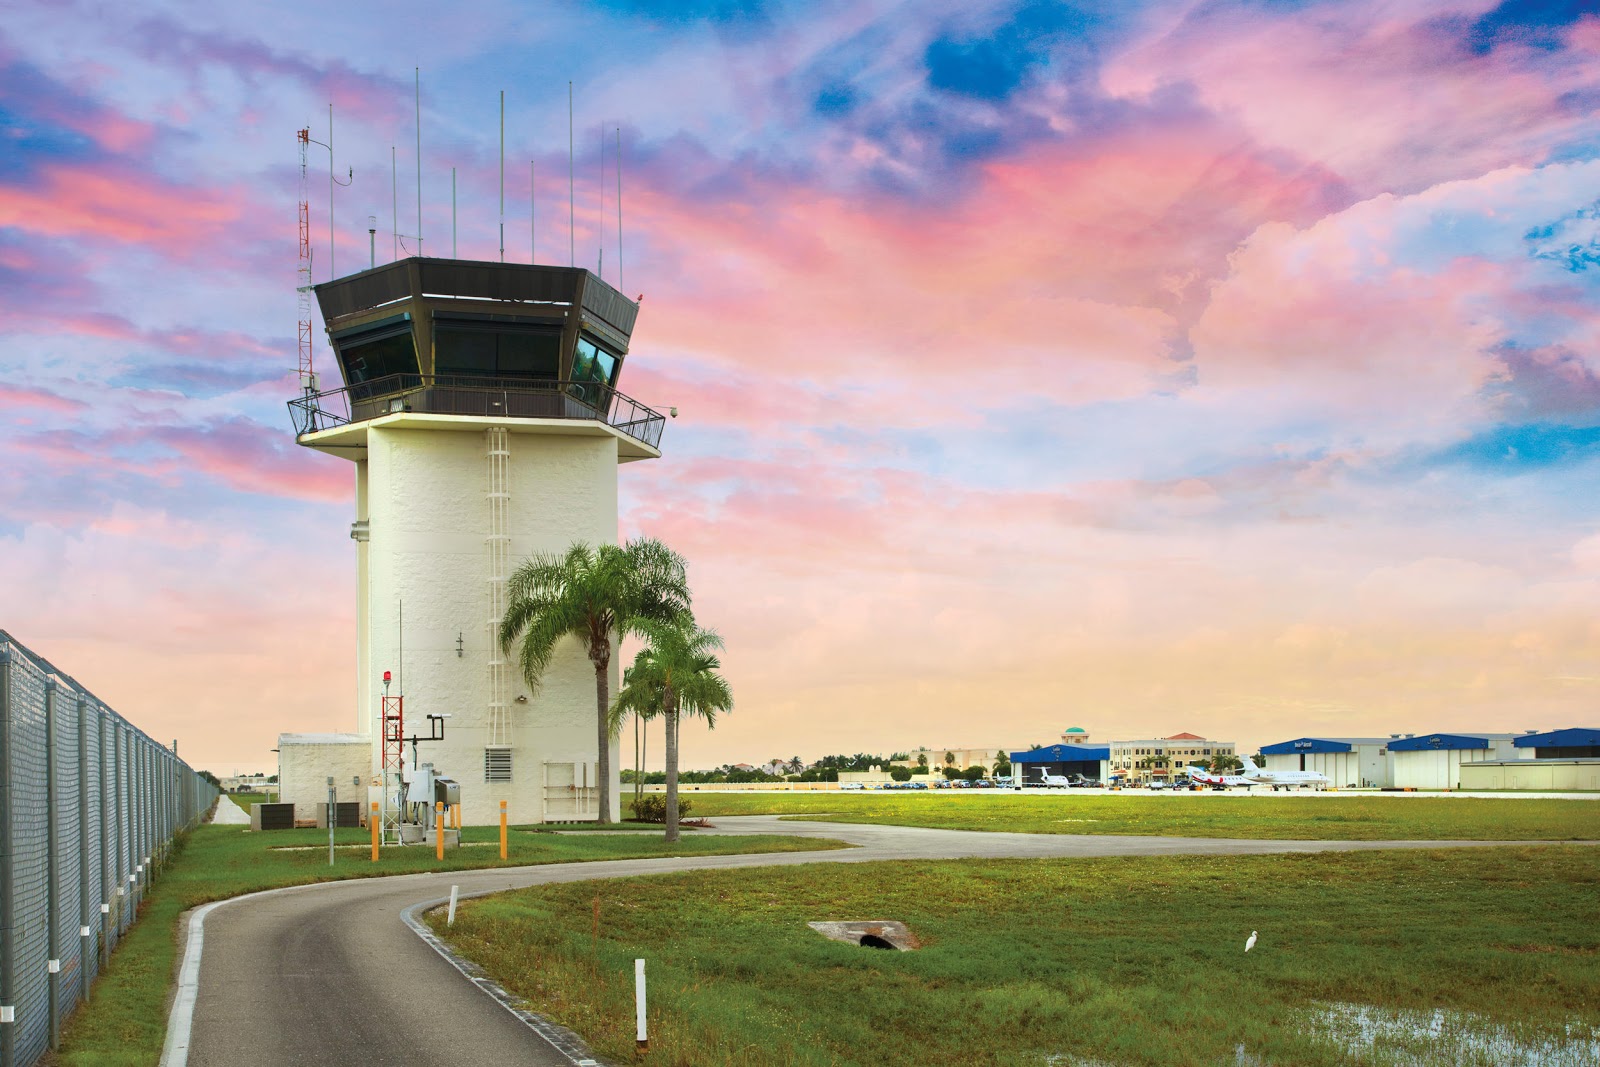 Boca Raton Airport Authority